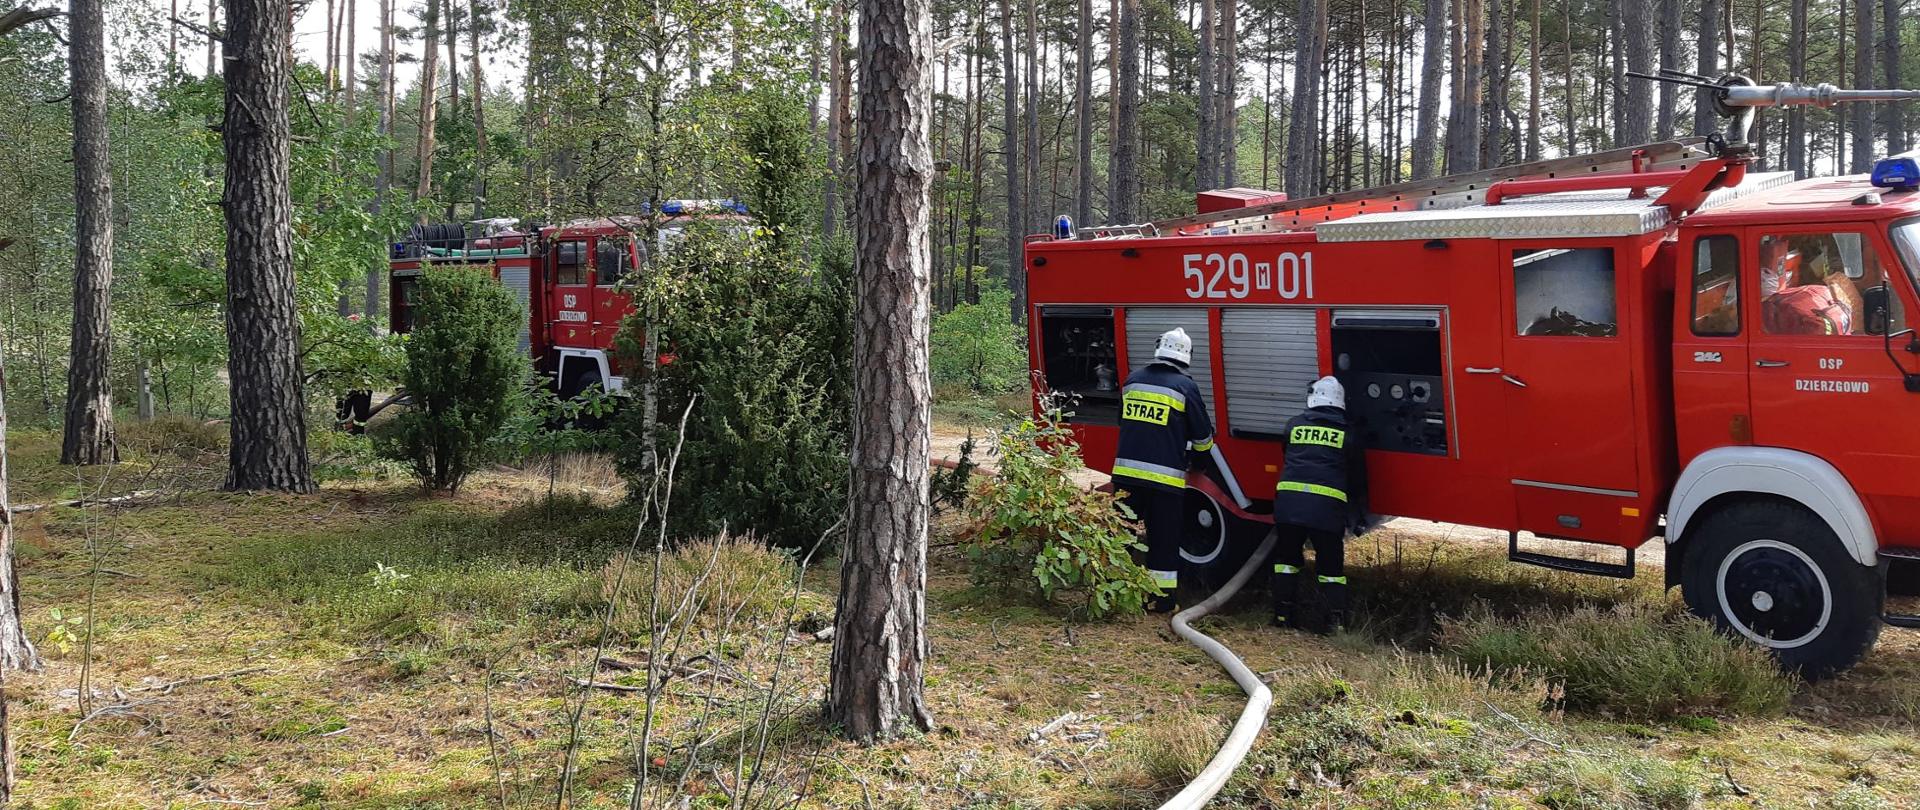 W lesie na polnej drodze stoją dwa wozy strażackie, koło których stoją strażacy podłączający odcinki gaśnicze. Ubrani są w ubrania bojowe oraz hełmy. 